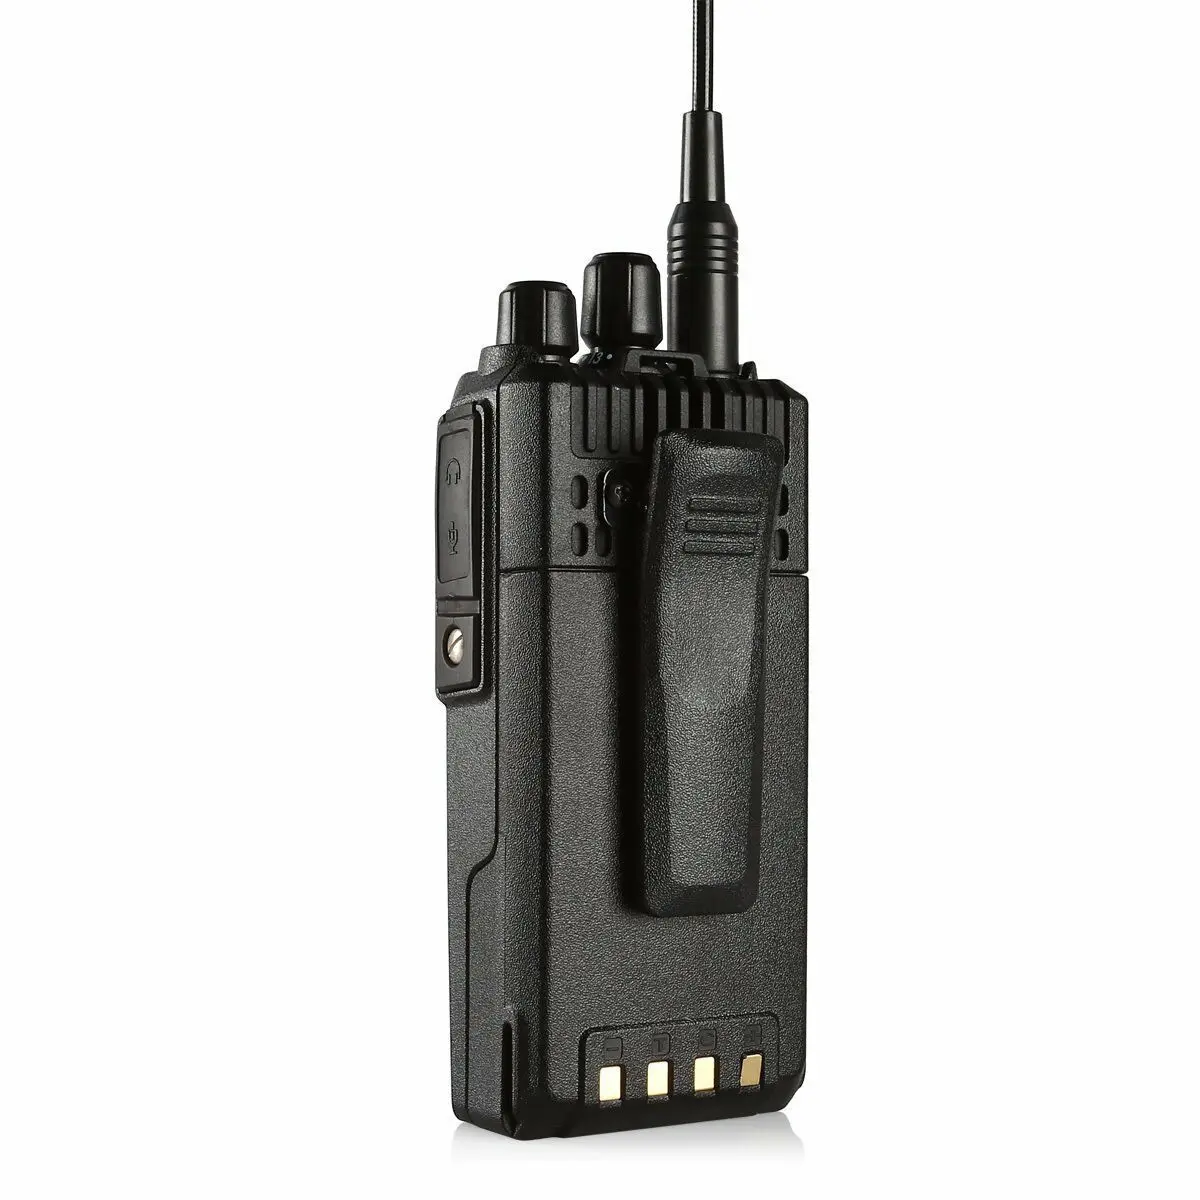 2 шт LEIXEN VV-25 портативная рация 25 Вт ветчина радио Amador 12,6 в 4000 мАч батарея Walky Talky профессиональная морская радиостанция диапазона VHF Comunicador